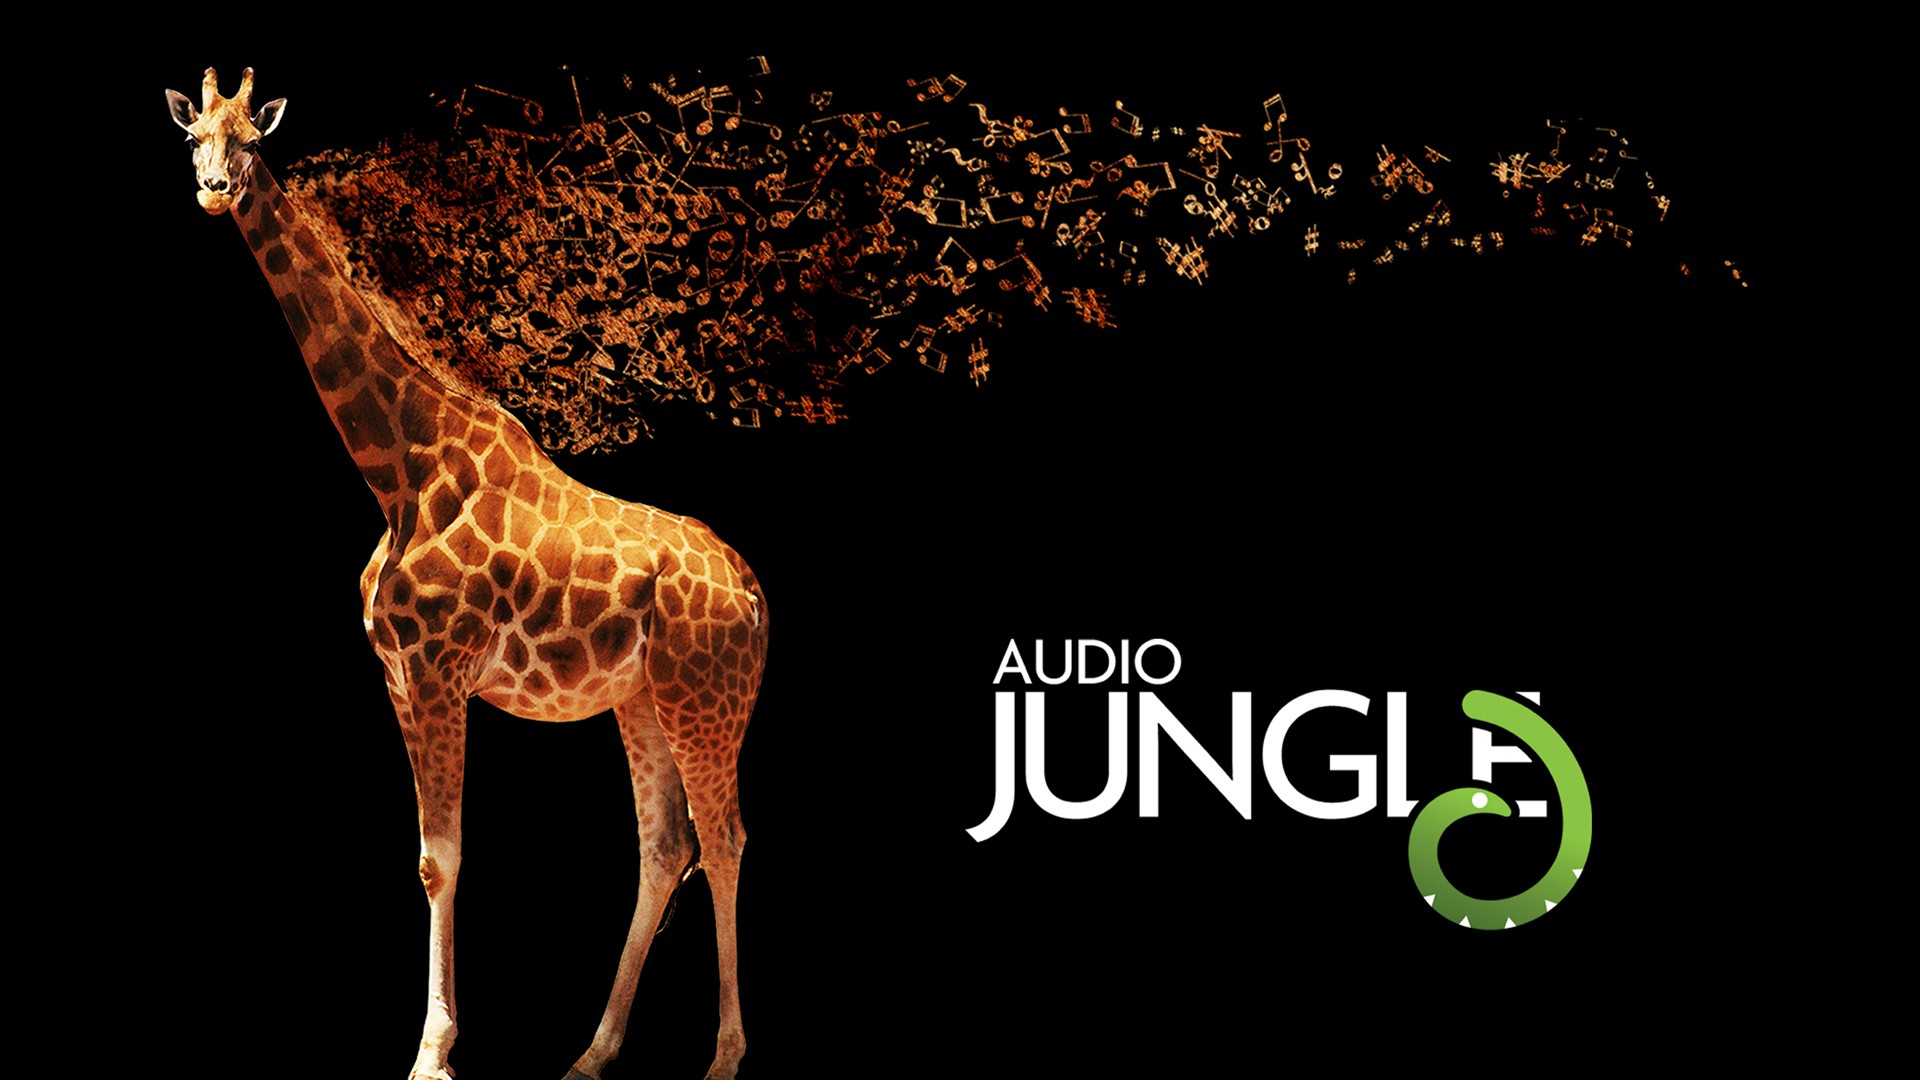 壁纸1920x1080 长颈鹿 Audio Jungle 创意壁纸壁纸 Audio Jungle 主题设计壁纸壁纸 Audio Jungle 主题设计壁纸图片 Audio Jungle 主题设计壁纸素材 插画壁纸 插画图库 插画图片素材桌面壁纸